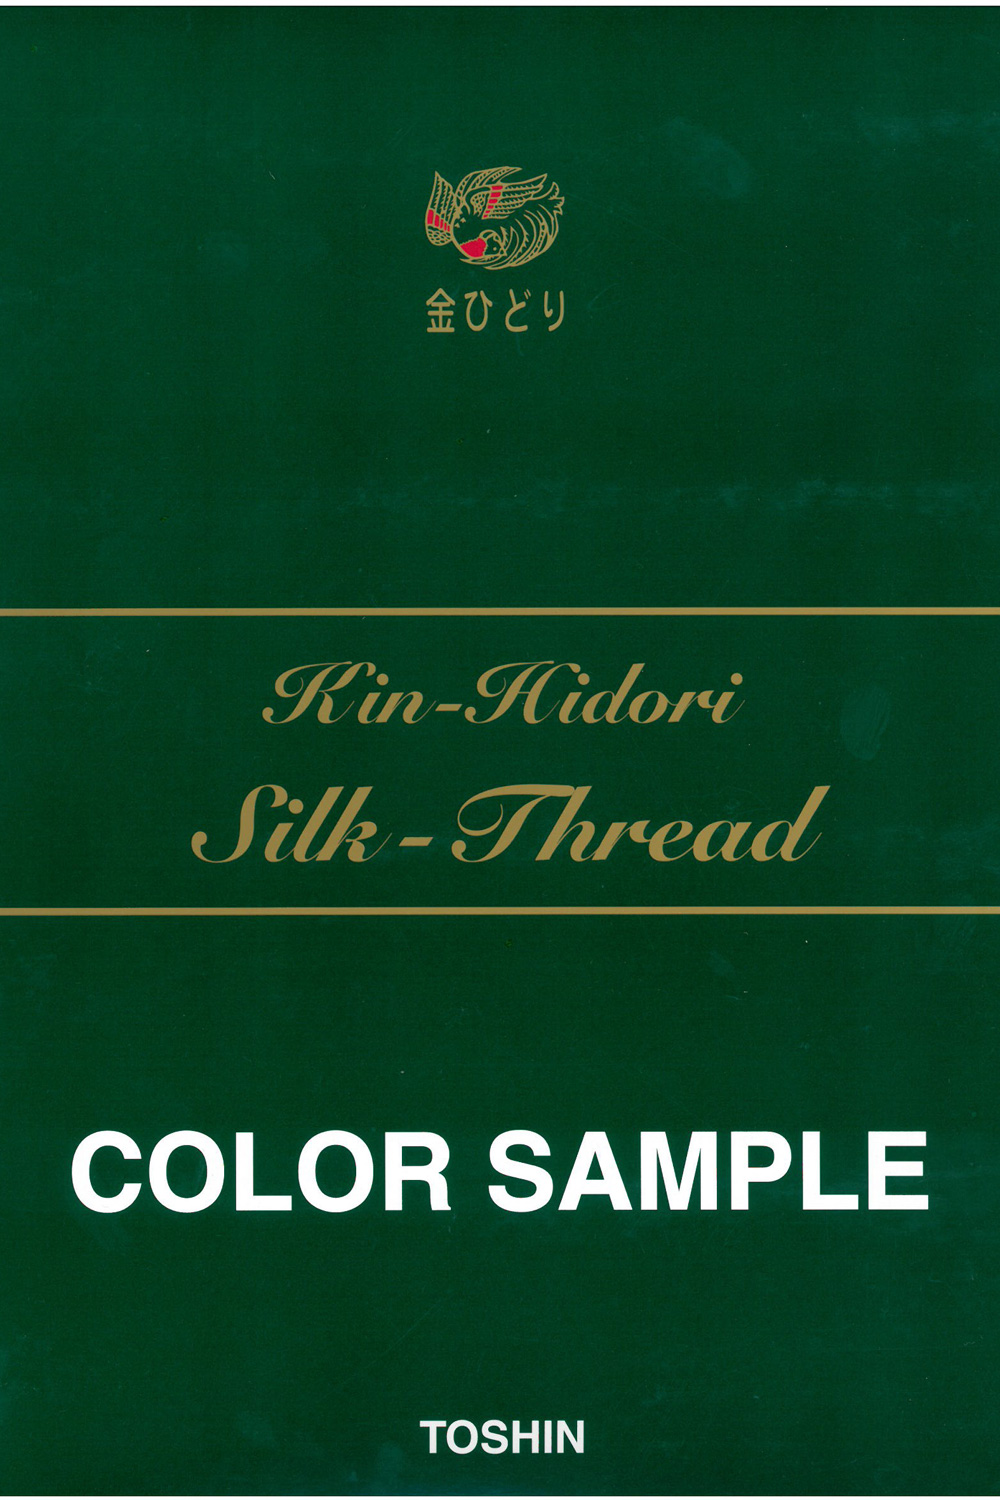 金ひどり 絹まつり(地縫) Linha De Costura Manual De Seda Kin-Hidori[Fio] TOSHIN